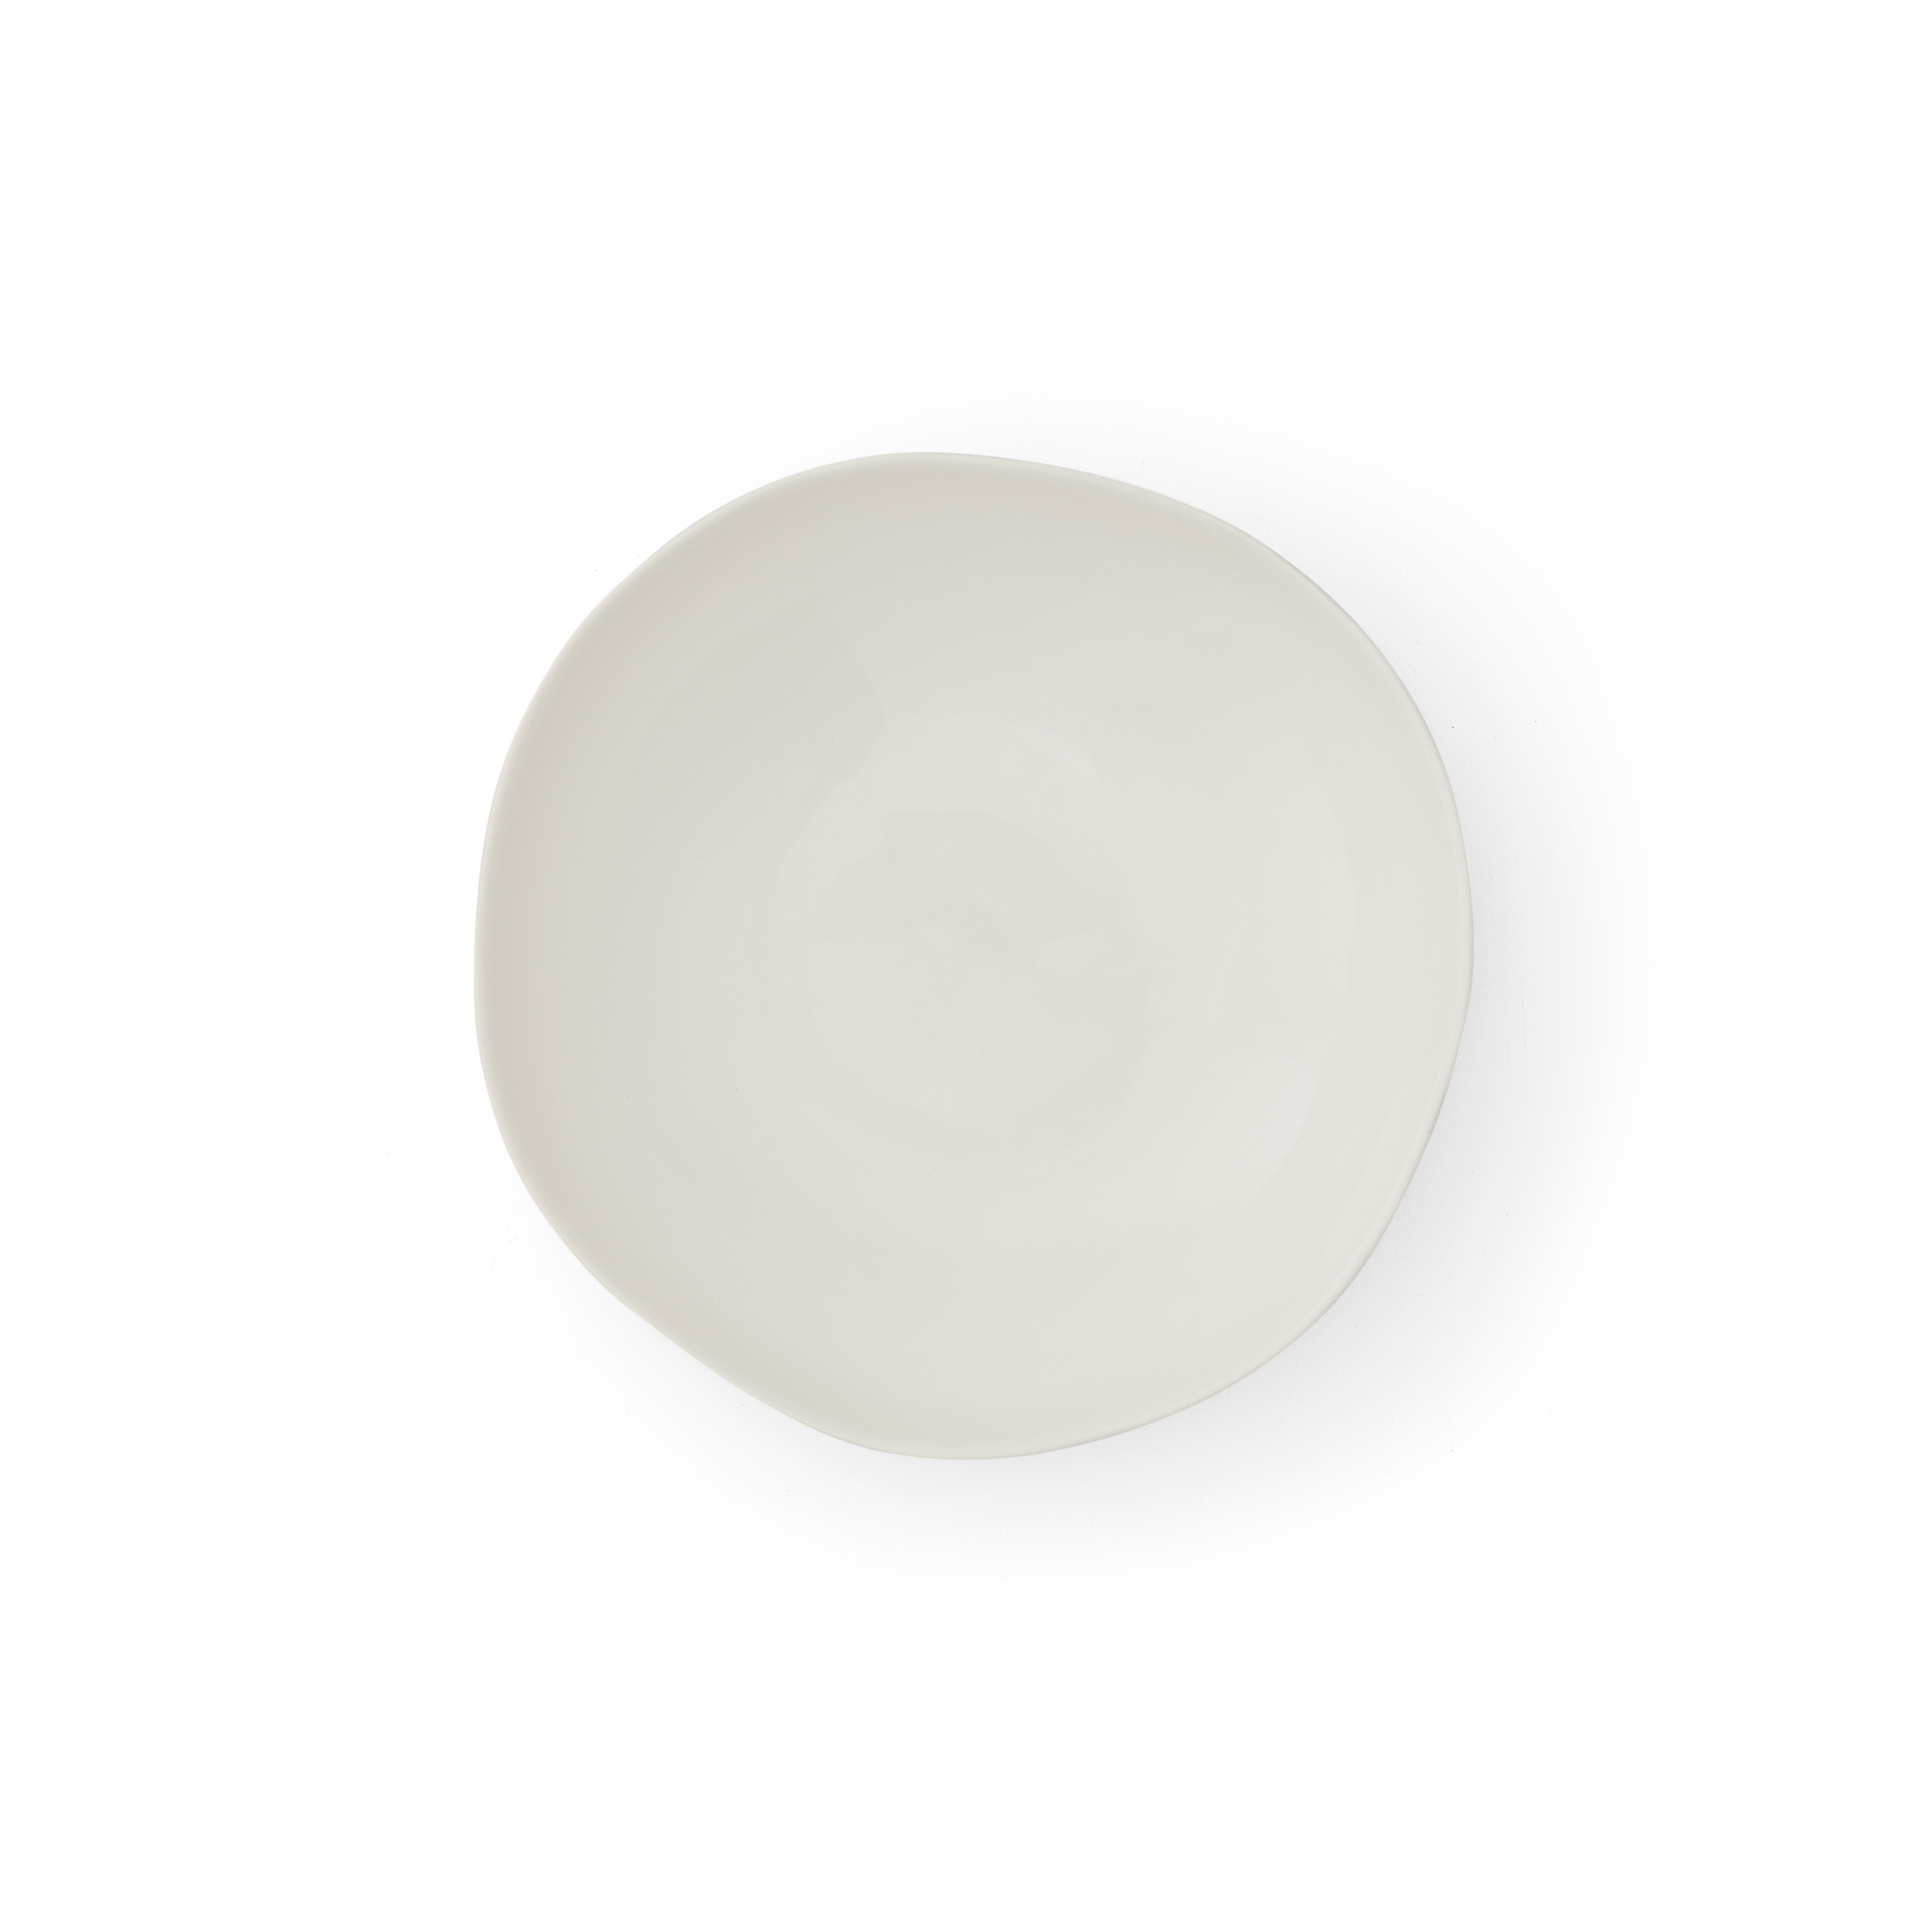 Sophie Conran Arbor 9" Pasta Bowl-Creamy White image number null